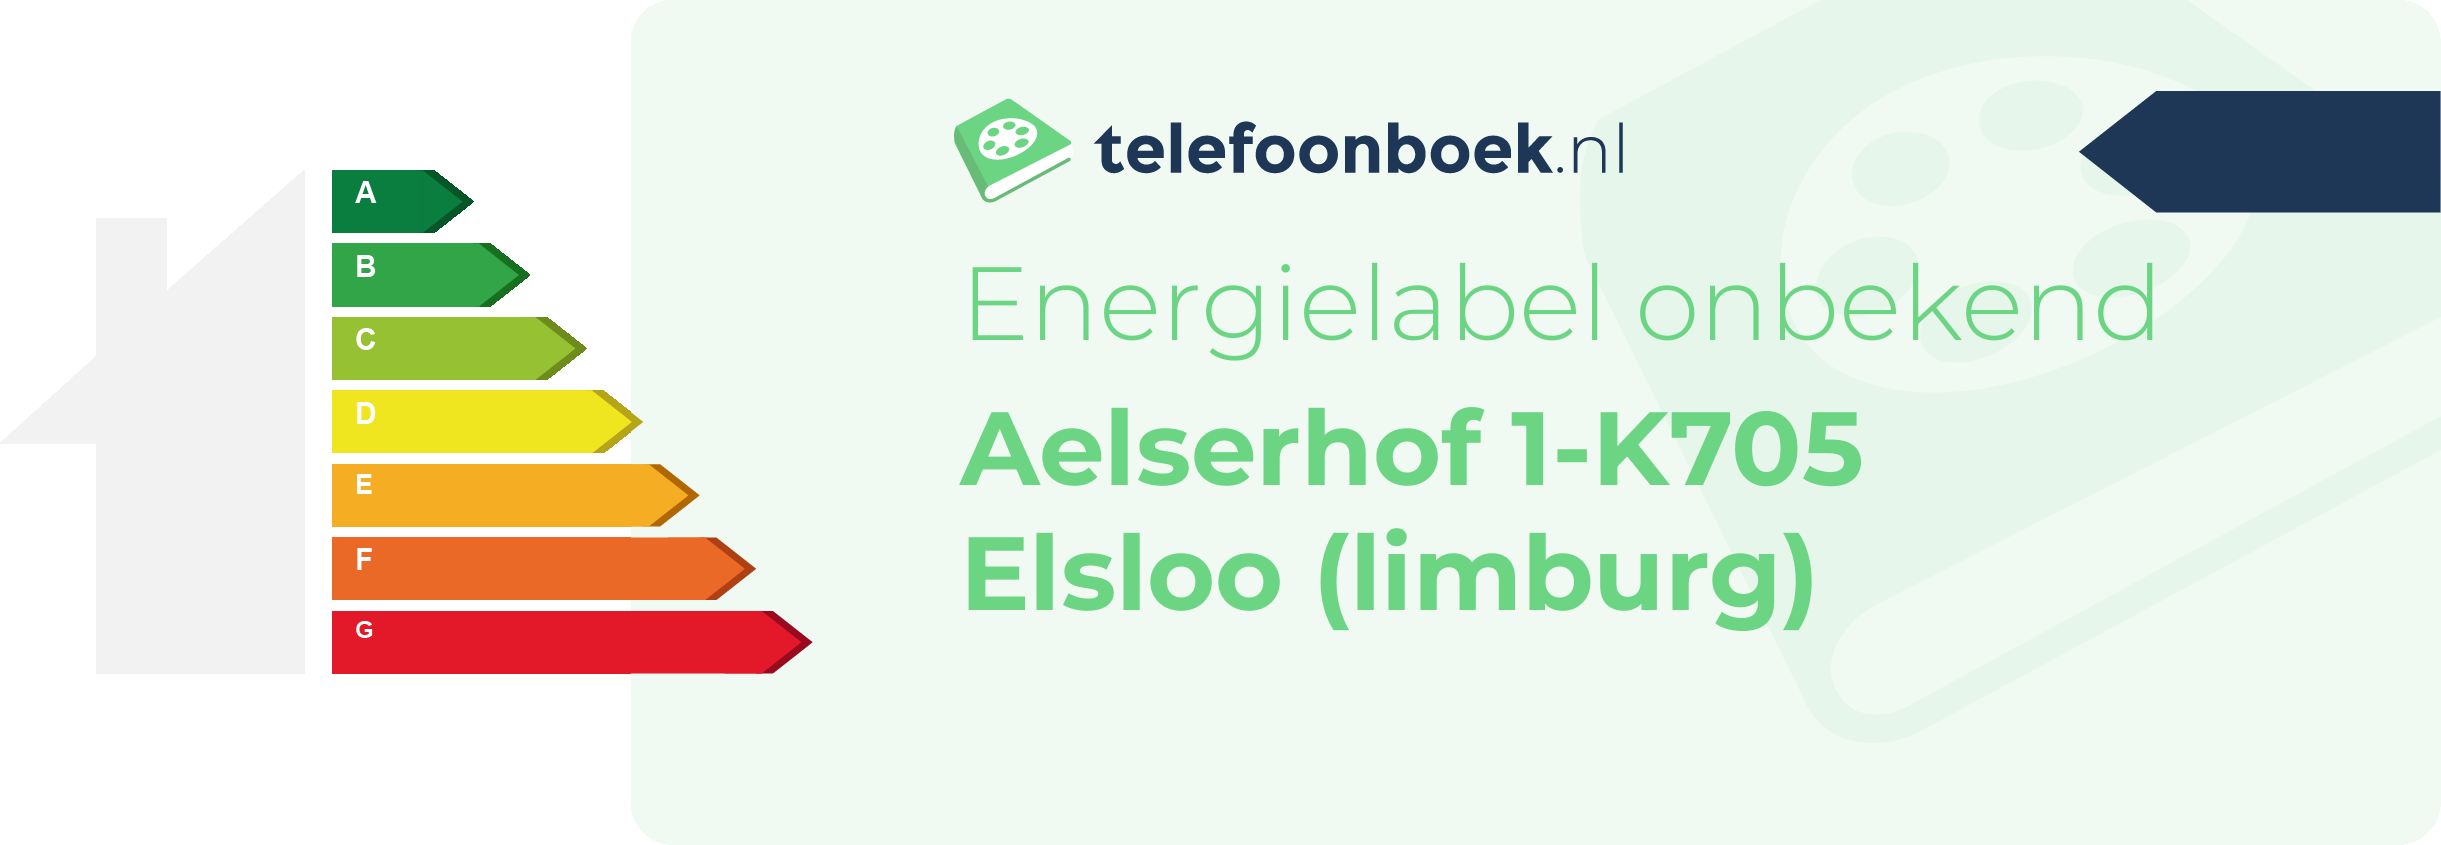 Energielabel Aelserhof 1-K705 Elsloo (Limburg)